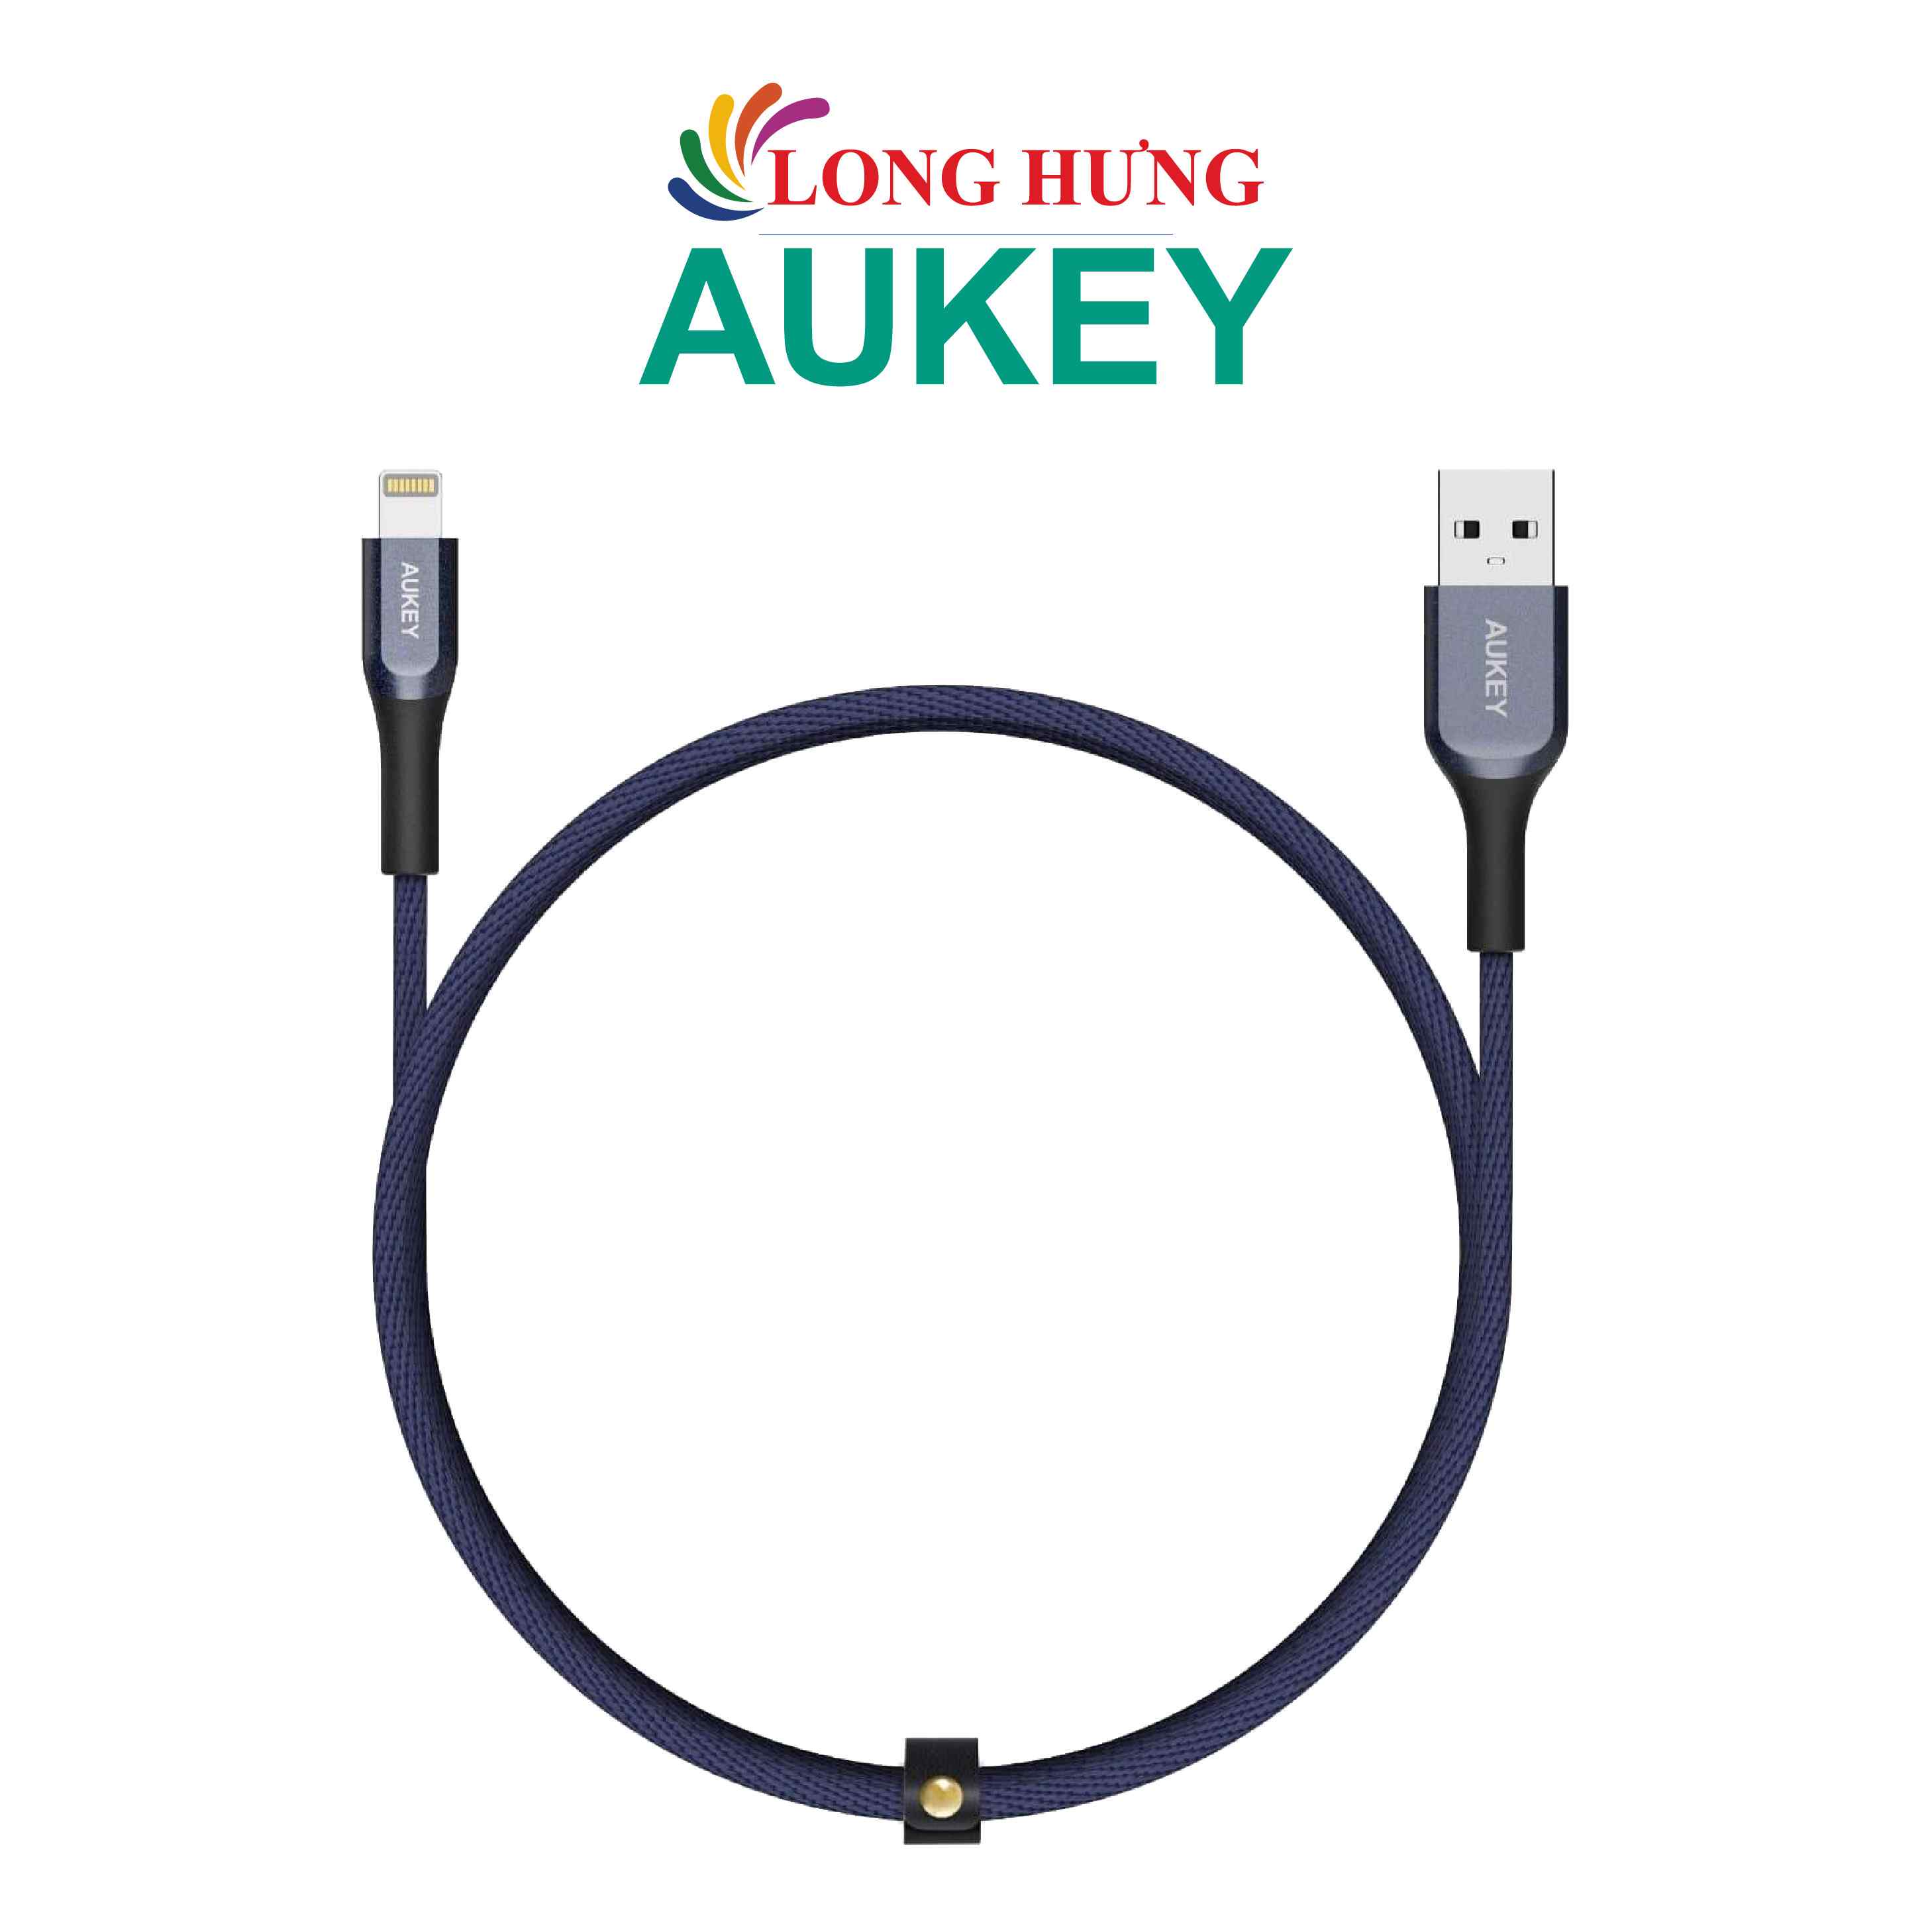 Cáp dành cho iP Aukey 1.2m CB-AKL1 - Hàng chính hãng